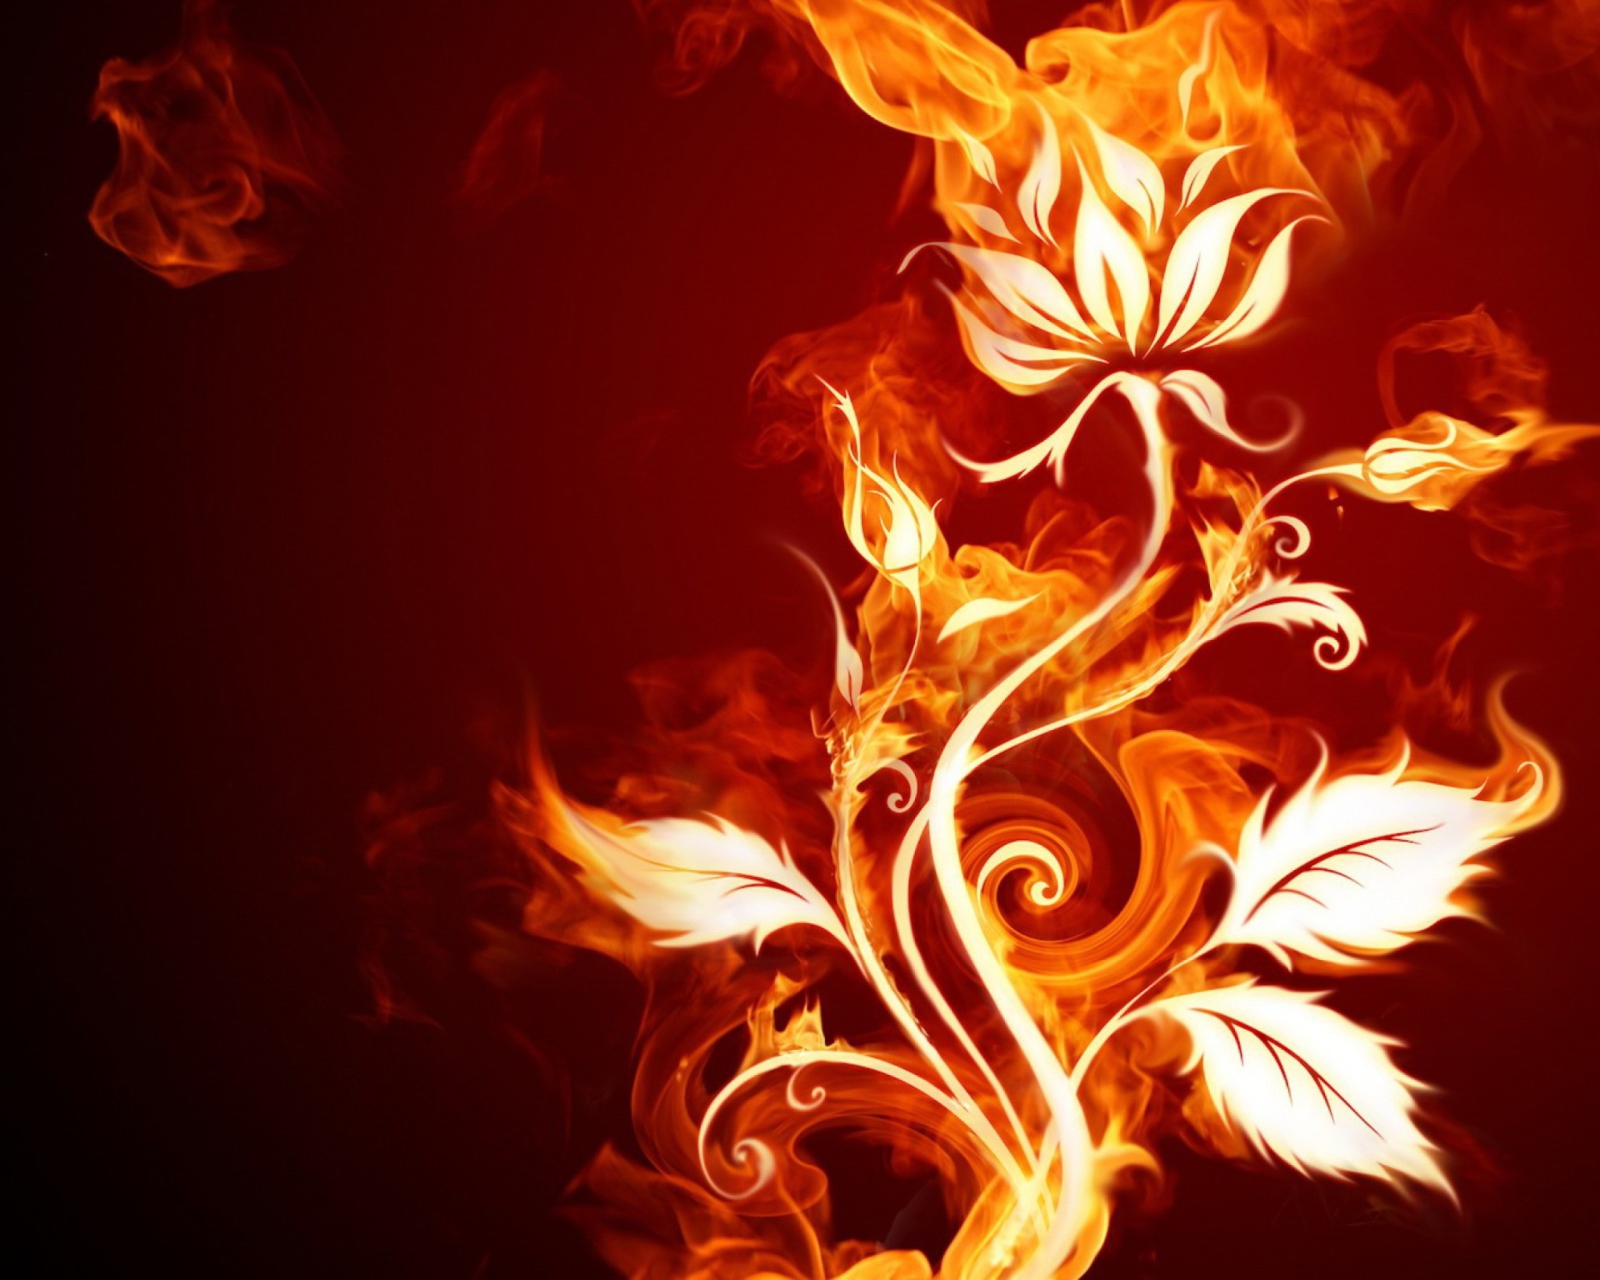 Fire Flower wallpaper 1600x1280